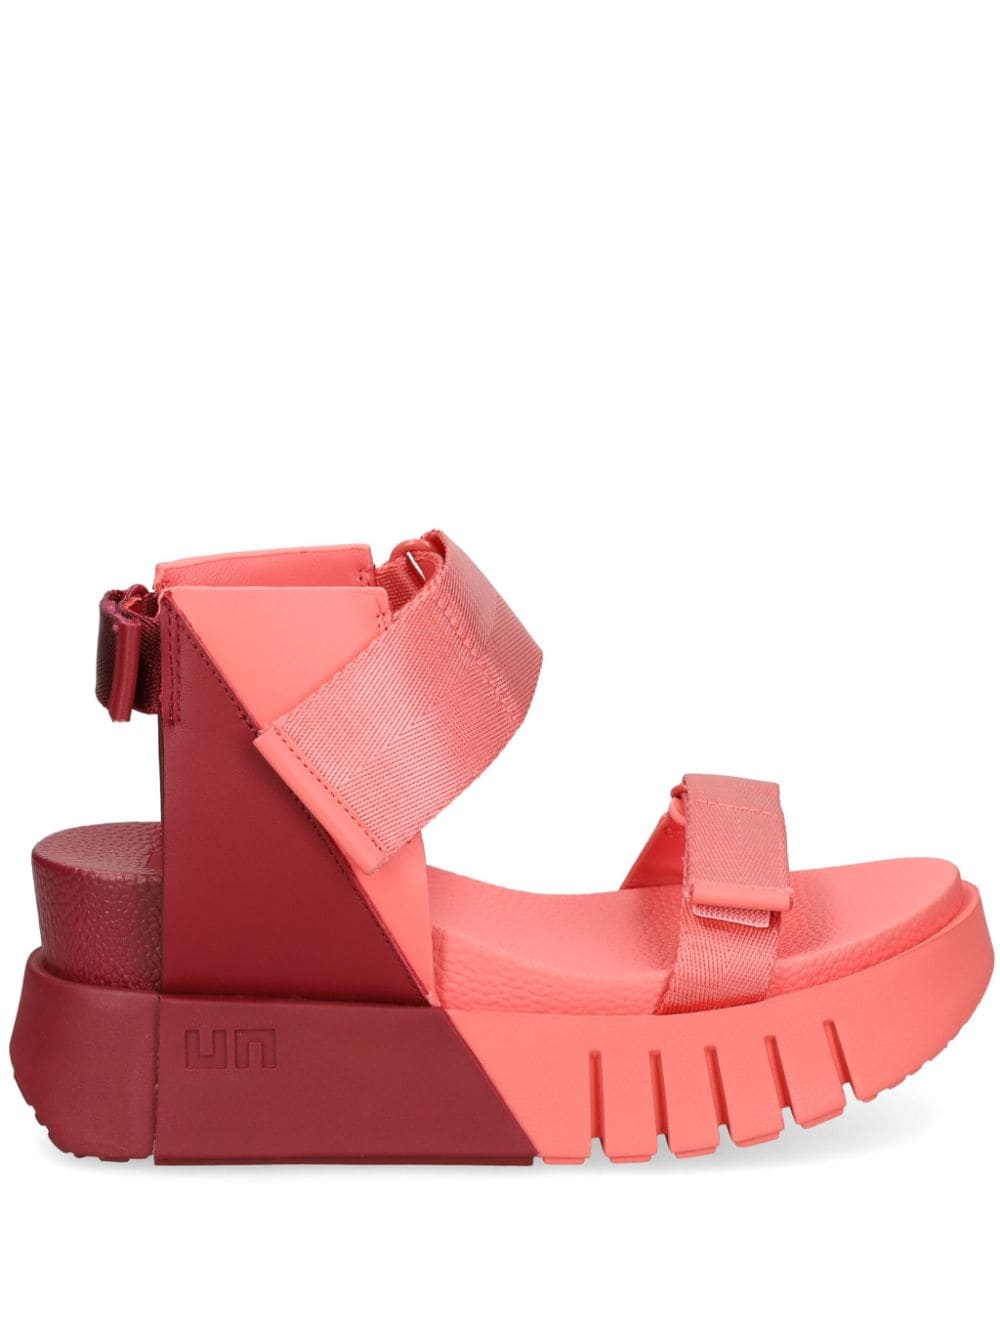 United Nude Delta Run 65mm platform sandals - Pink